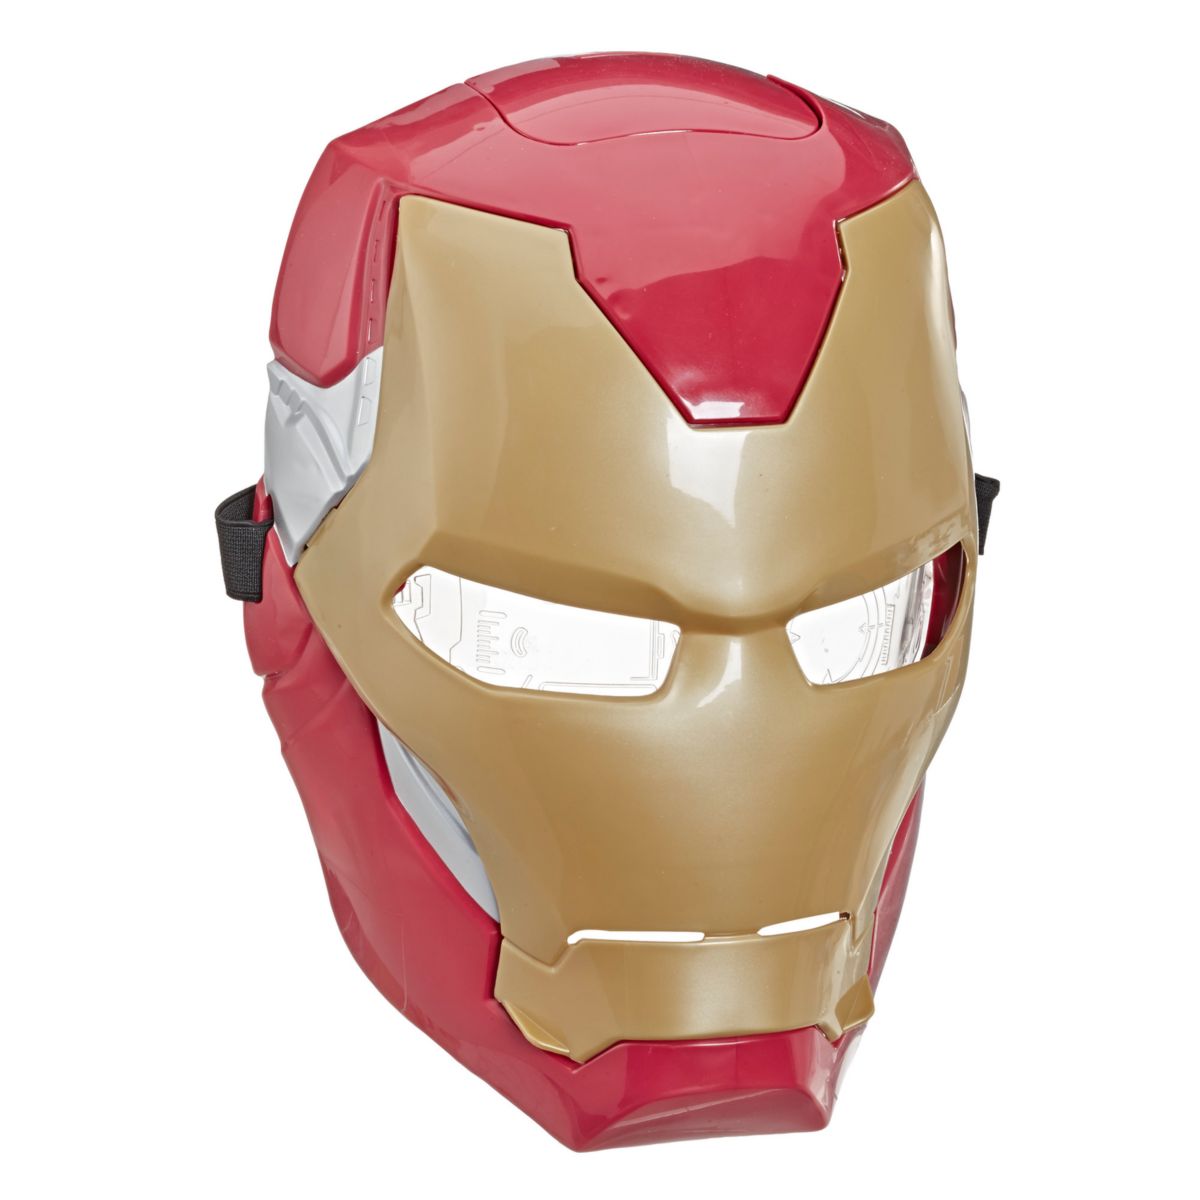 Marvel Avengers Iron Man Flip FX Mask с активируемыми флип световыми эффектами для костюма и ролевой игры от Hasbro HASBRO